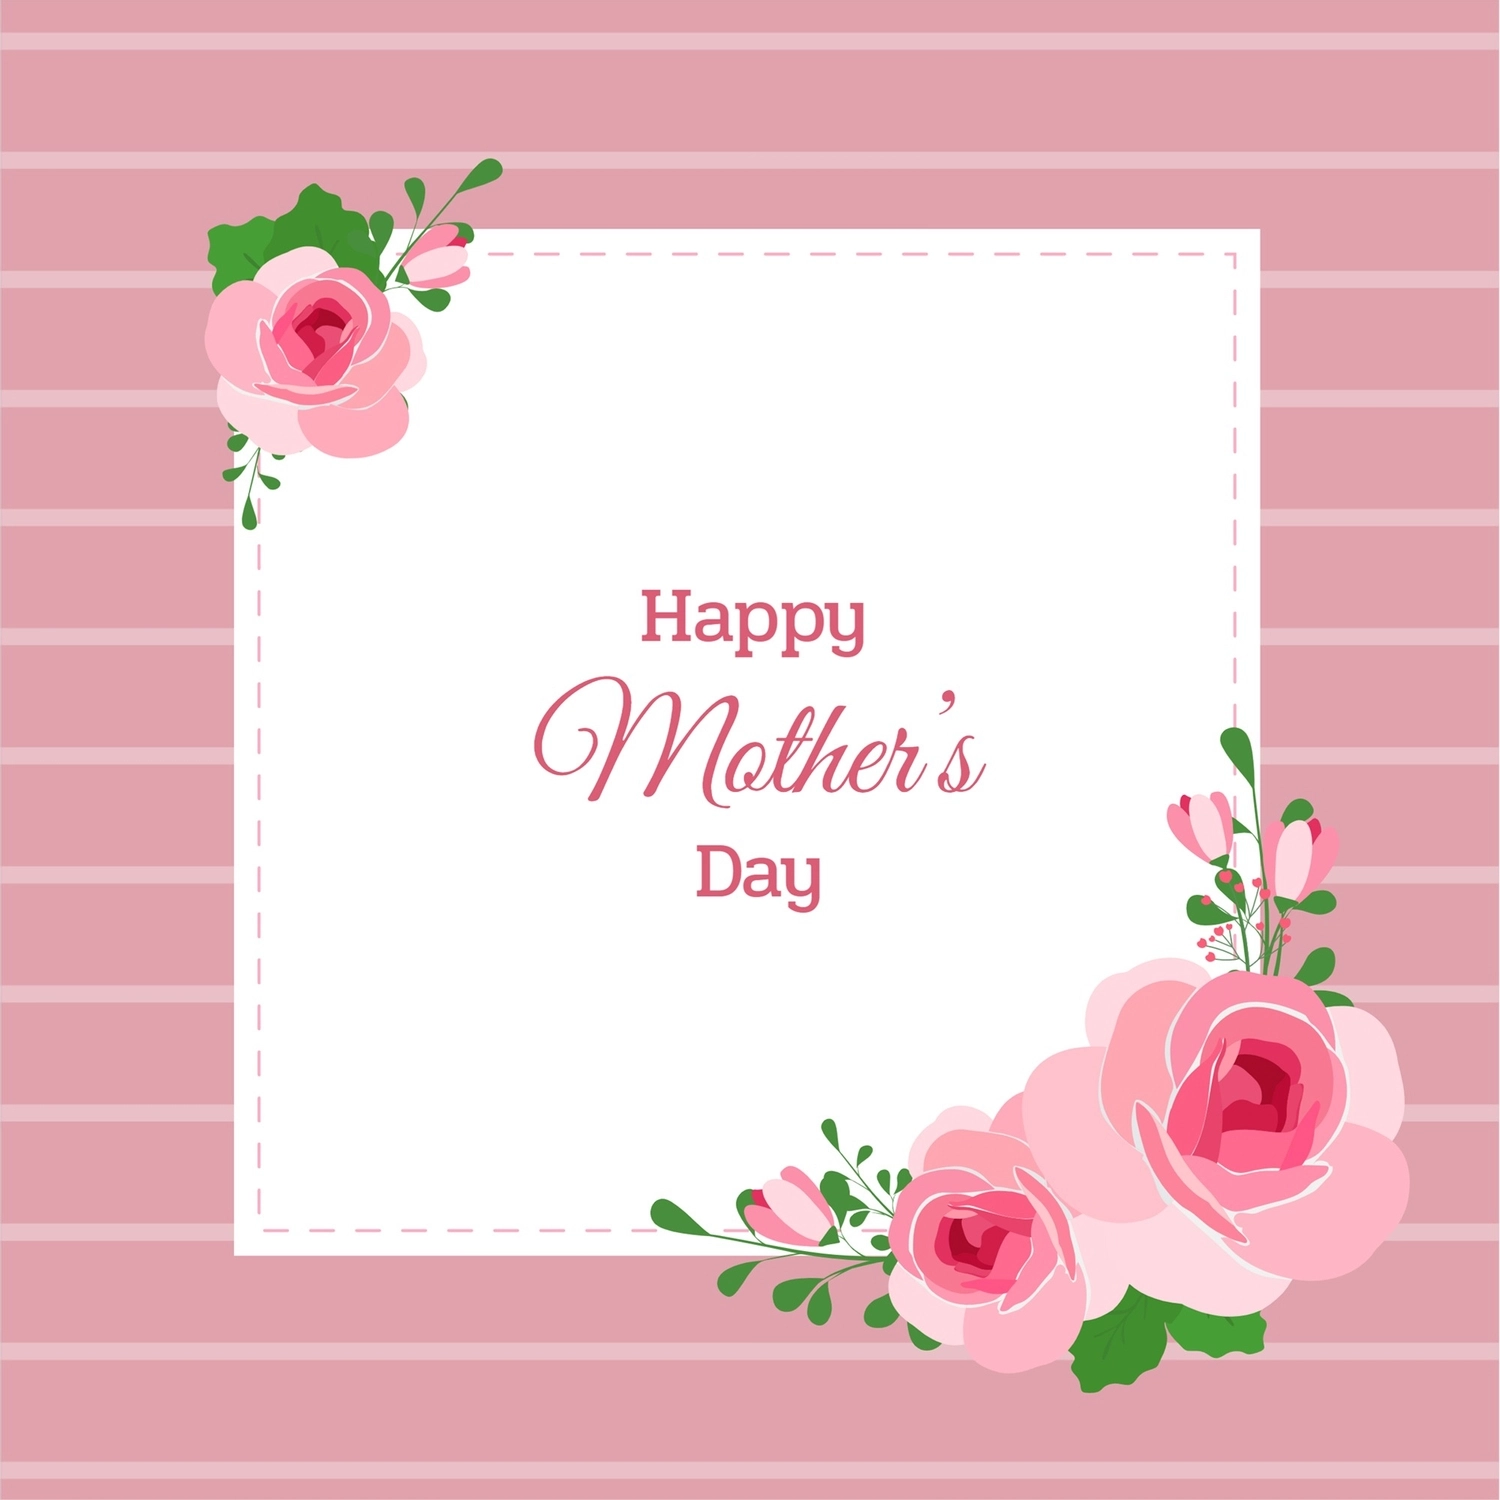 母の日グリーティングカード　薔薇とフレーム, ピンク地, 作成, デザイン, メッセージカードテンプレート